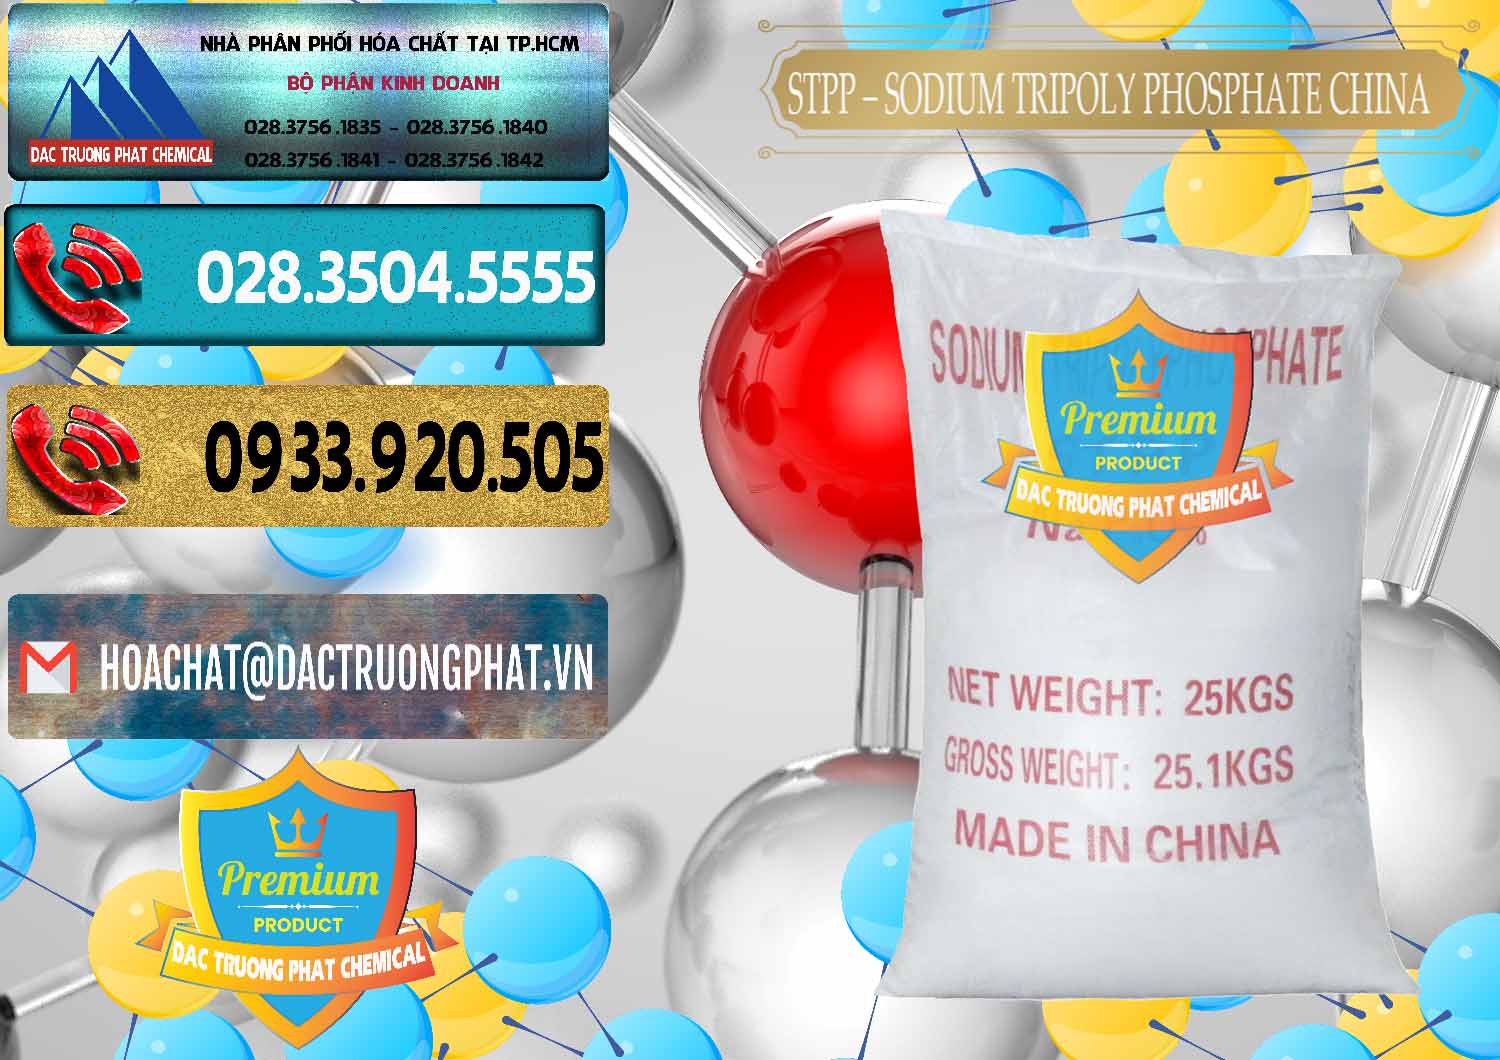 Đơn vị chuyên cung cấp - bán Sodium Tripoly Phosphate - STPP 96% Chữ Đỏ Trung Quốc China - 0155 - Cty cung ứng & phân phối hóa chất tại TP.HCM - hoachatdetnhuom.com